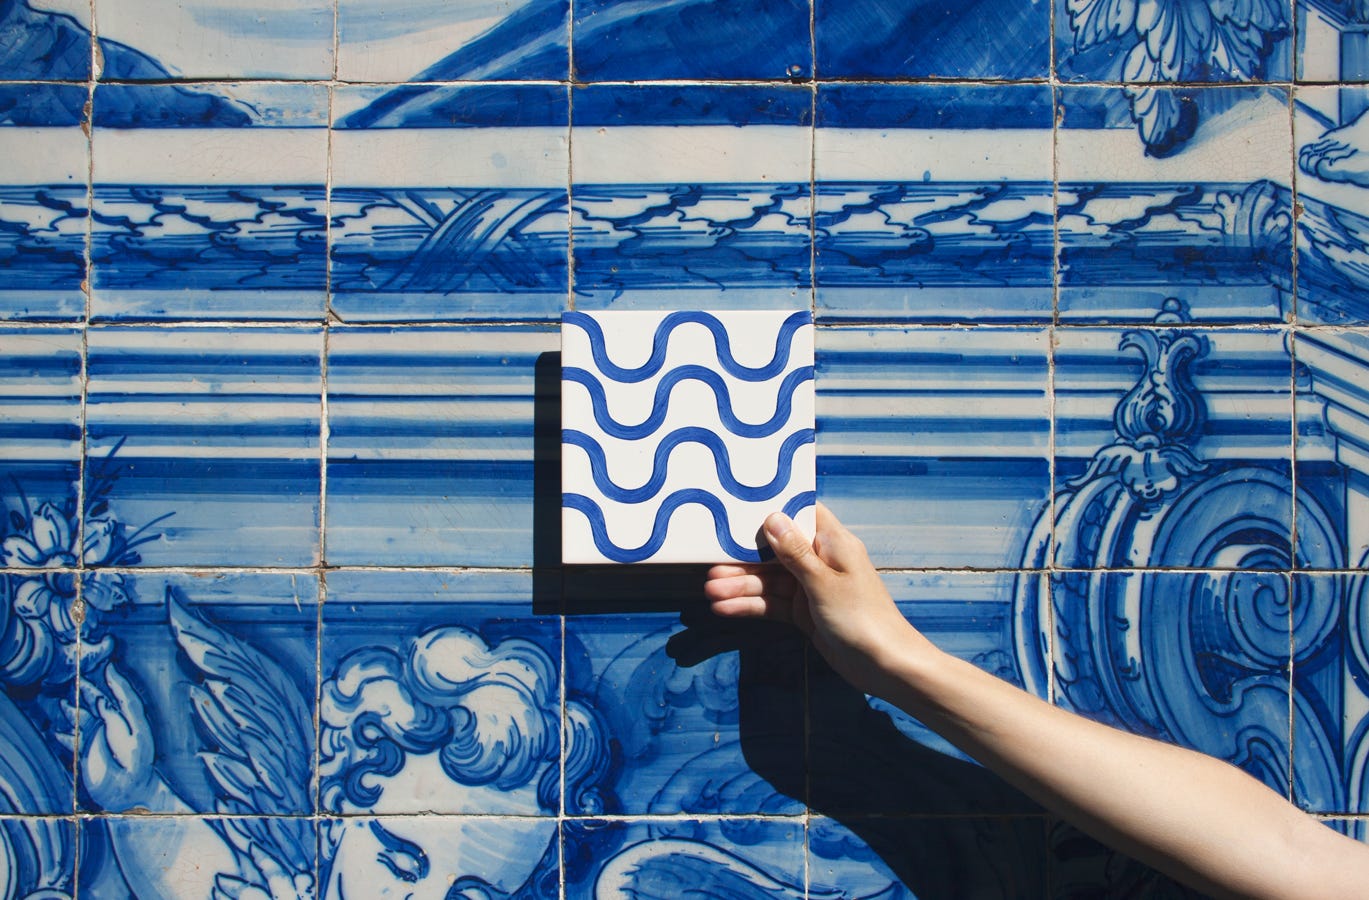 Uno scorcio di una parete di Porto, decorata con le tradizionali piastrelle bianche e azzurre. Al centro dell'immagine, una mano regge una piastrella bianca decorata con onde azzurre.